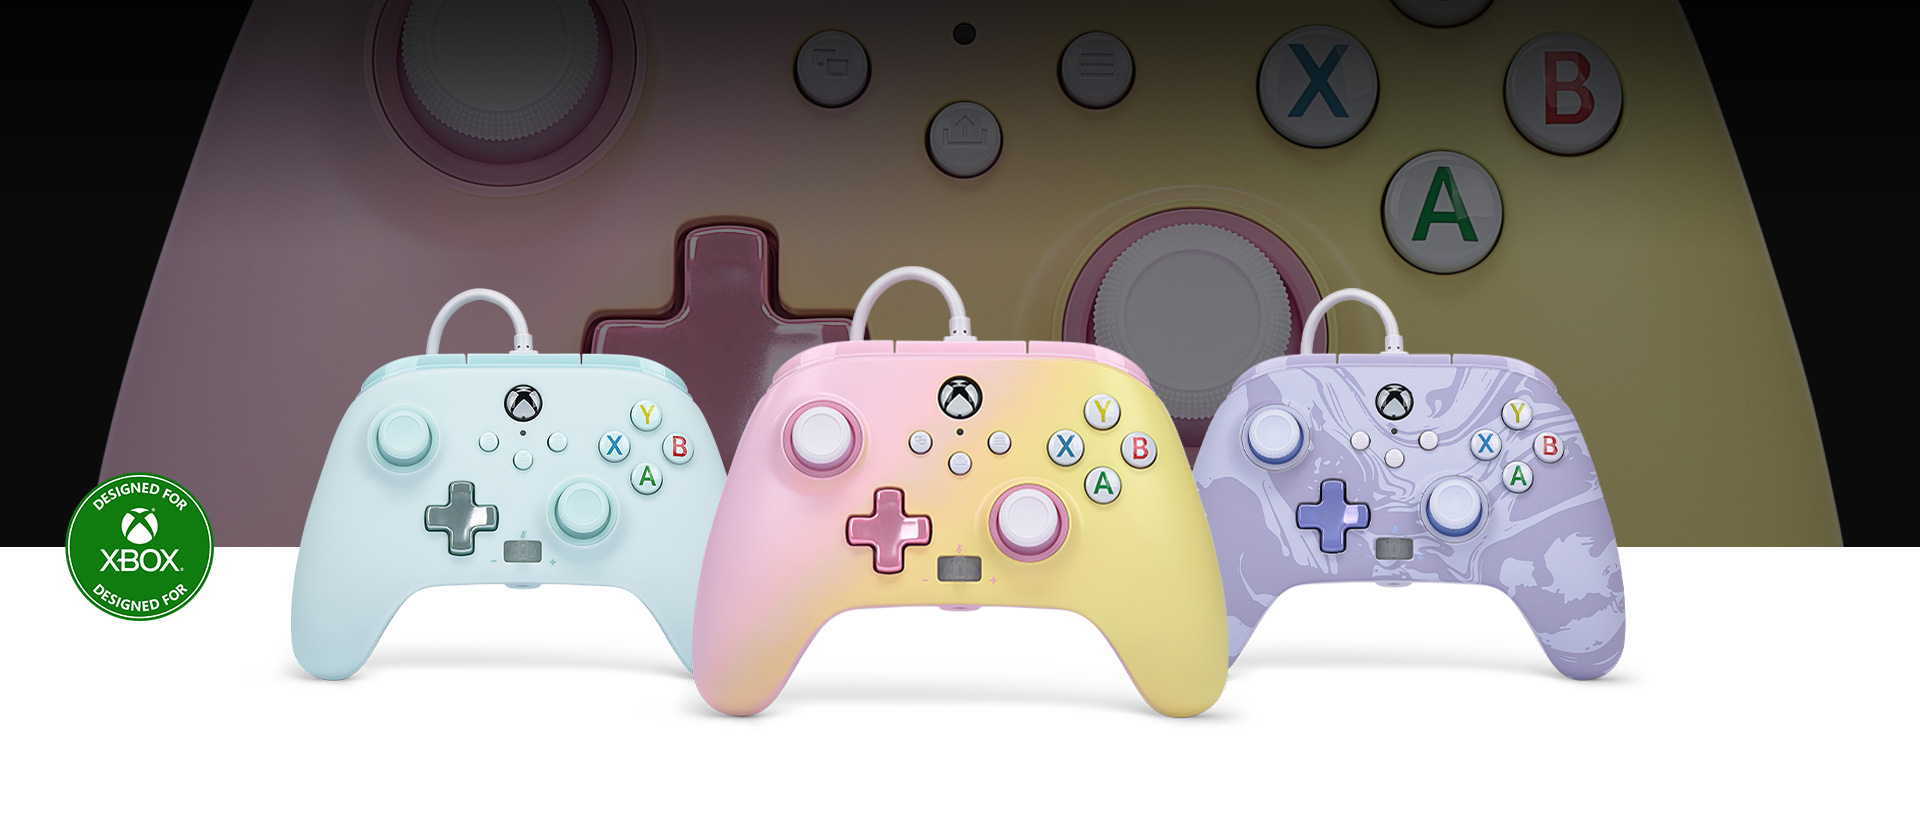 Designed for Xbox logó, rózsaszín limonádé kontroller elöl, mellette vattacukor-kék és lila örvény kontrollerekkel